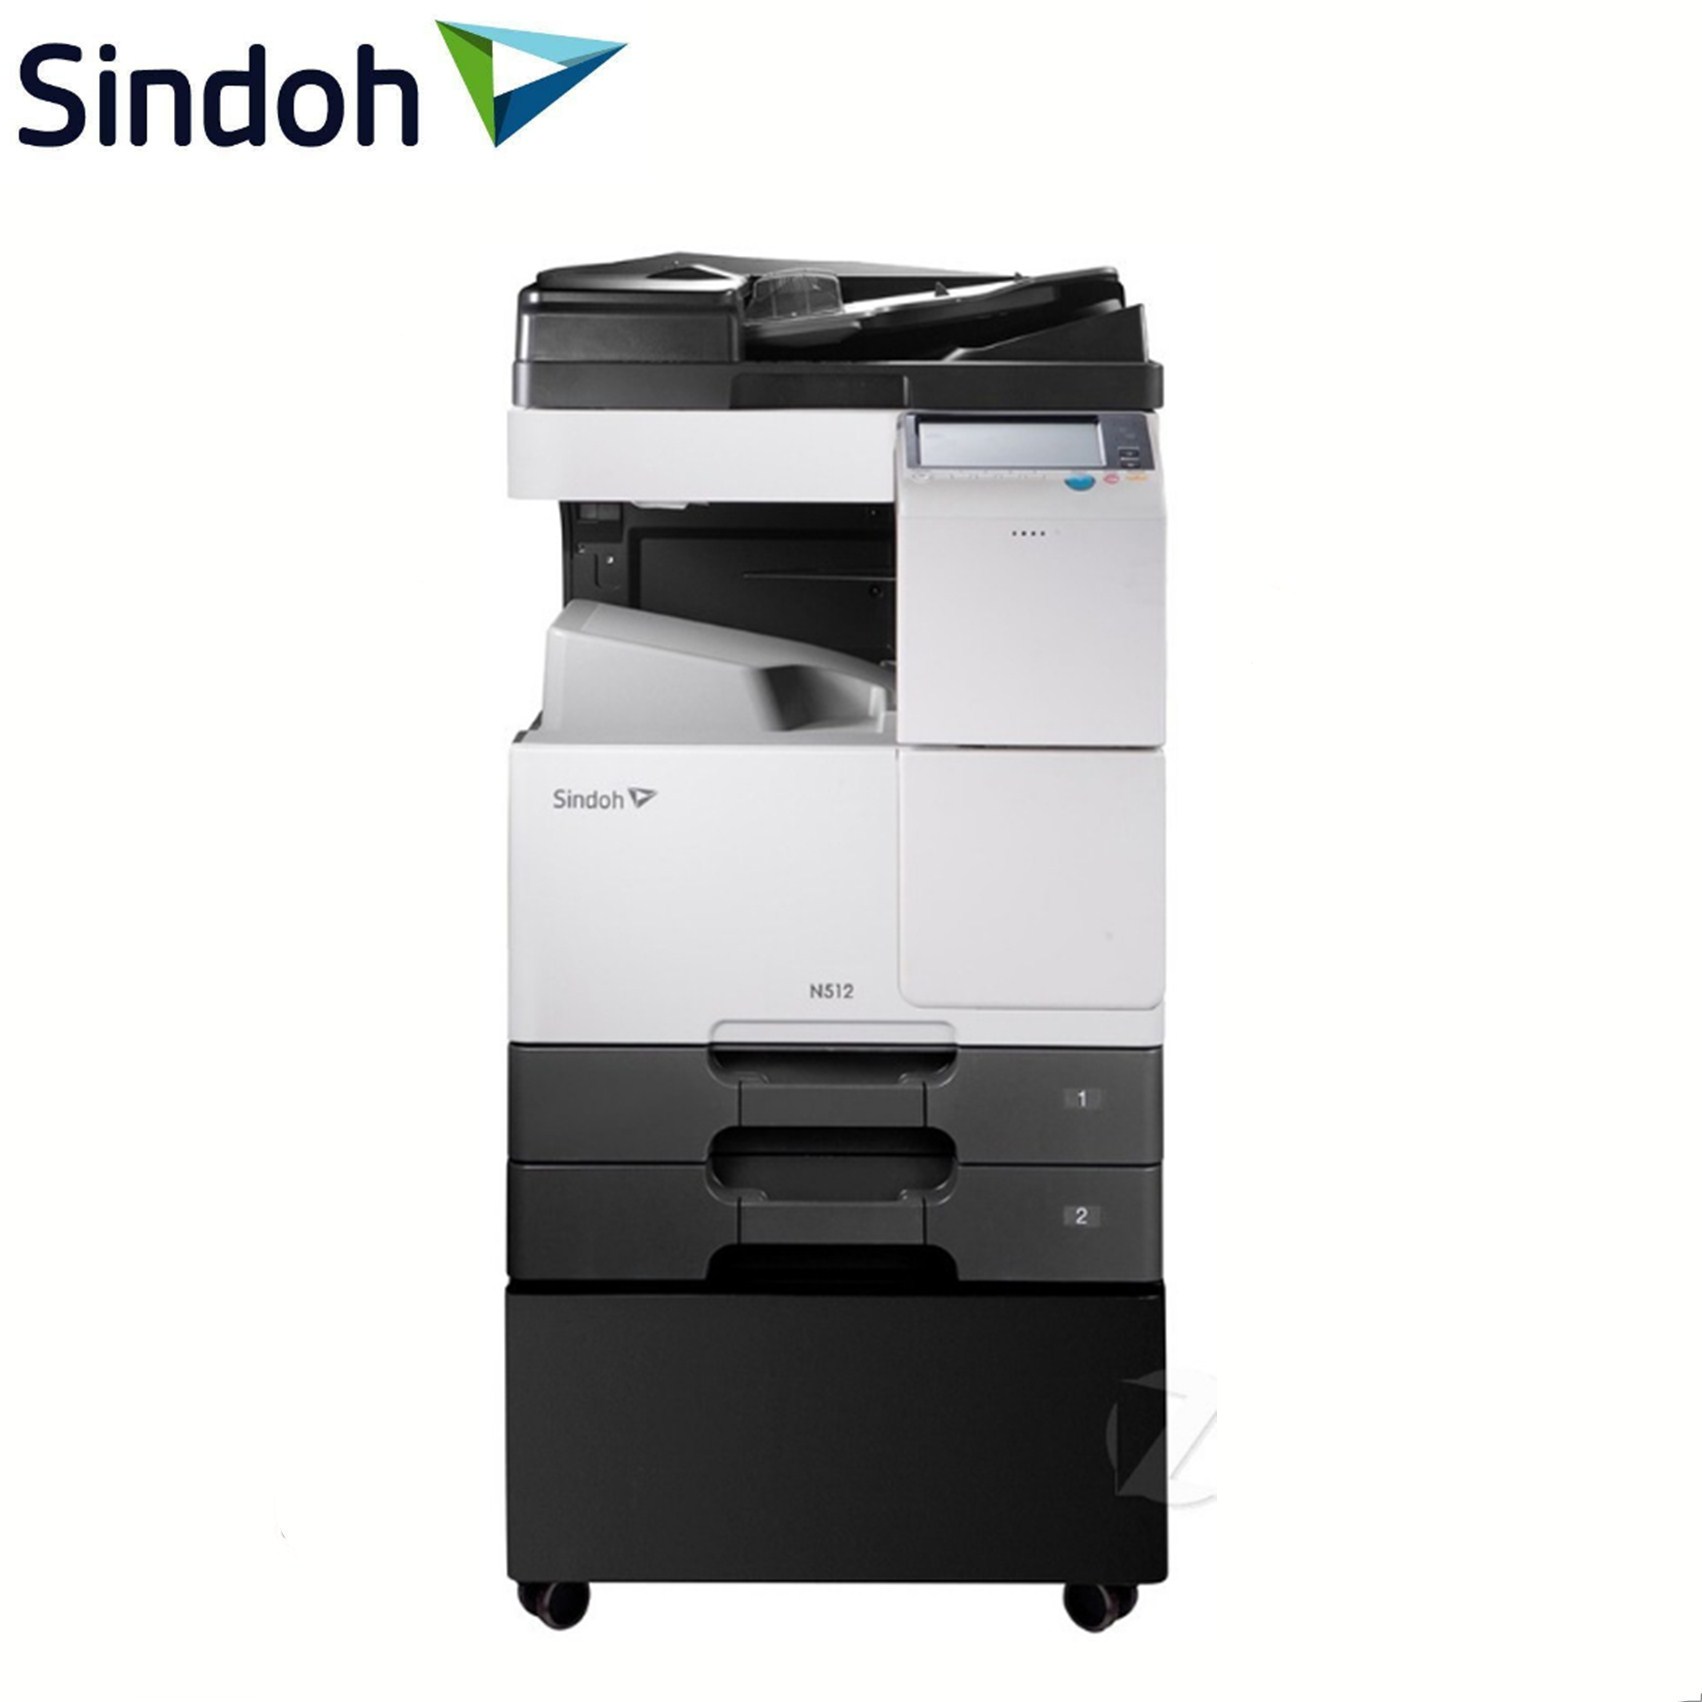 新都(SINDOH)N512 黑白数码复印机 打印/复印/扫描/传真 标配双面器